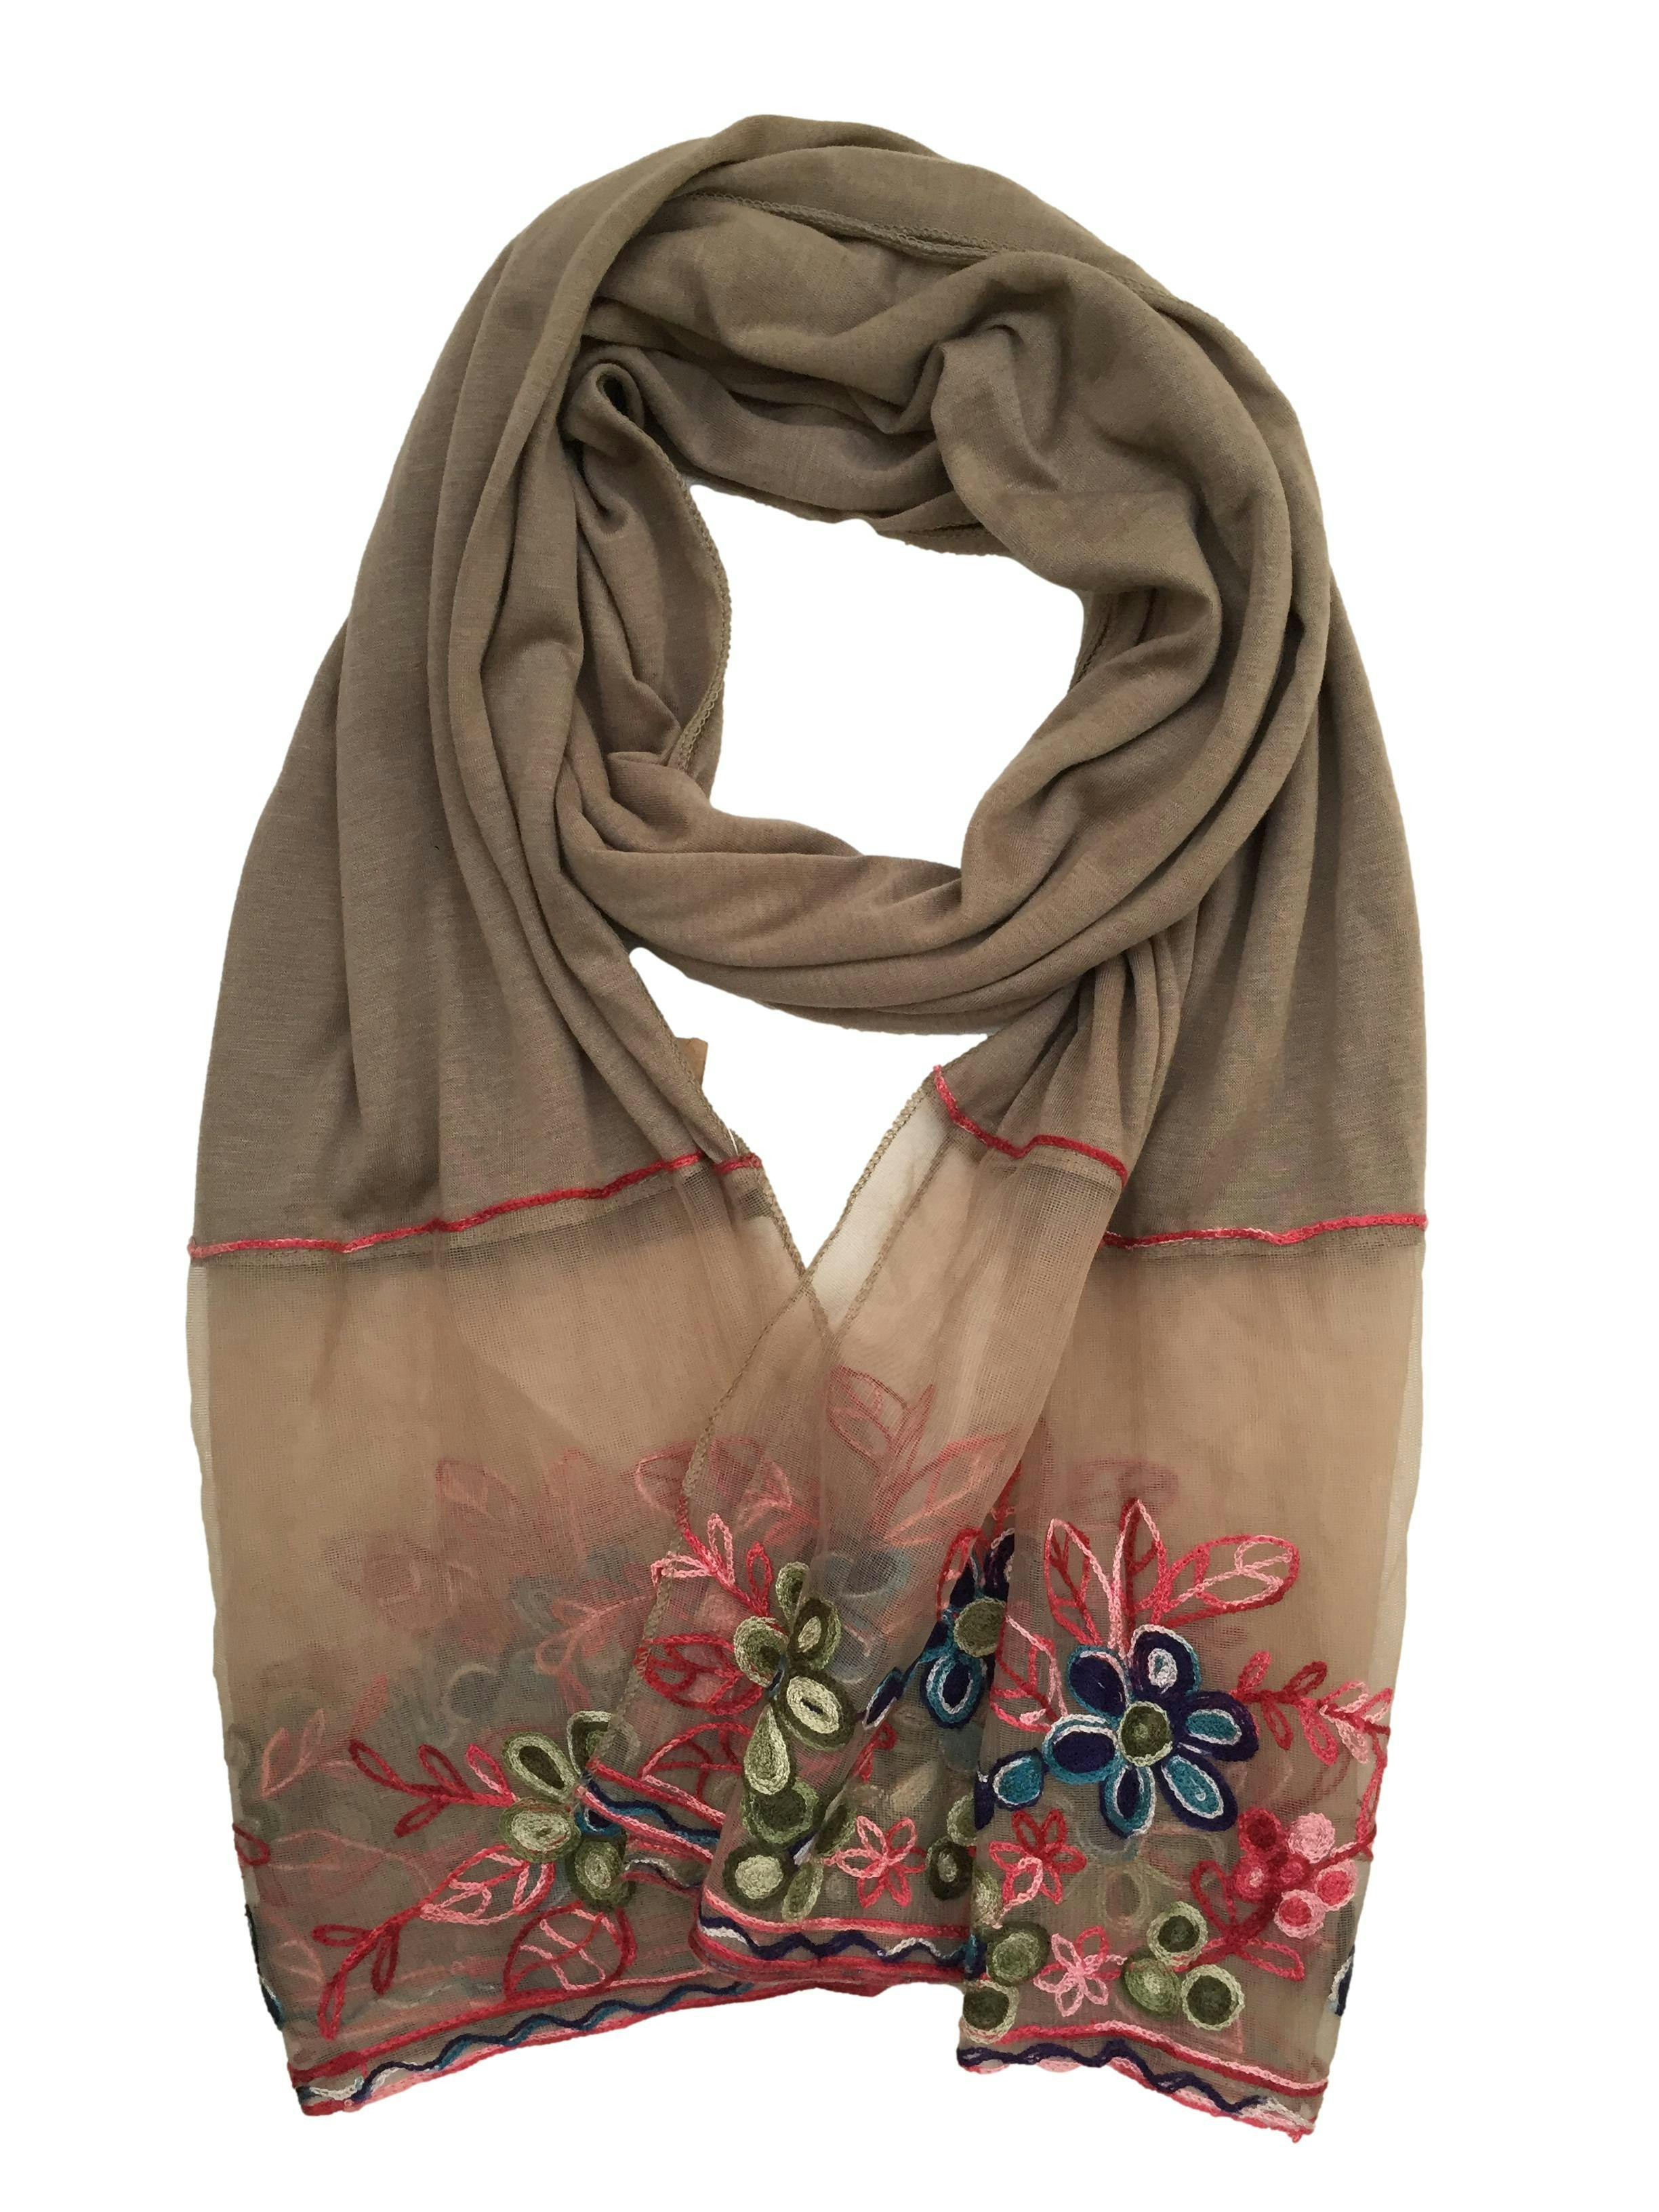 Bufanda marrón suave al tacto con mesh bordado de flores en extremos. Medidas 185cm x 80cm